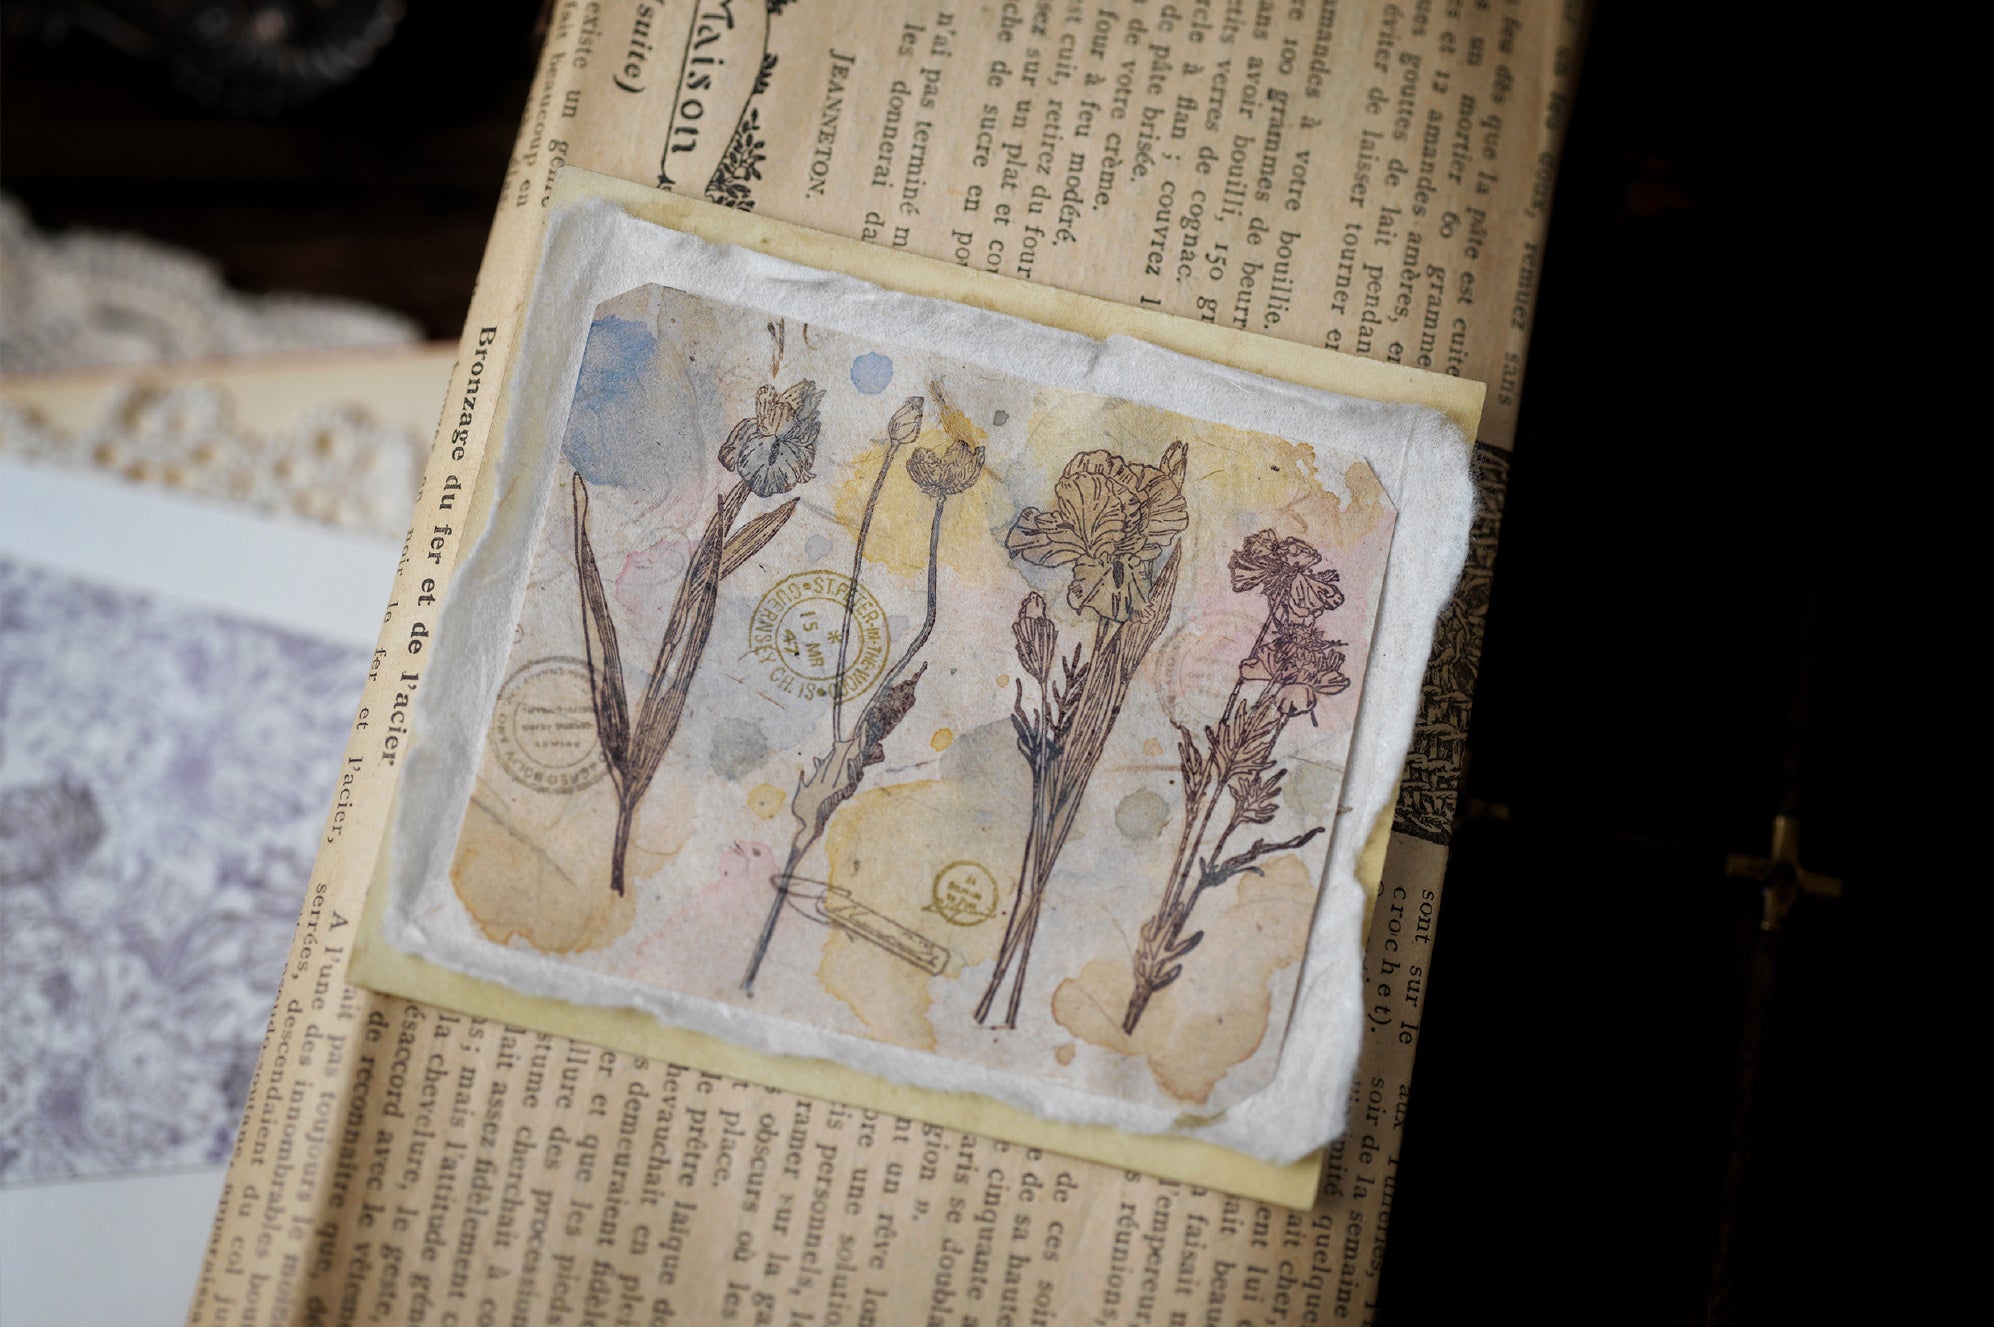 Benchu Studio: Flower Illustration Stamps Set